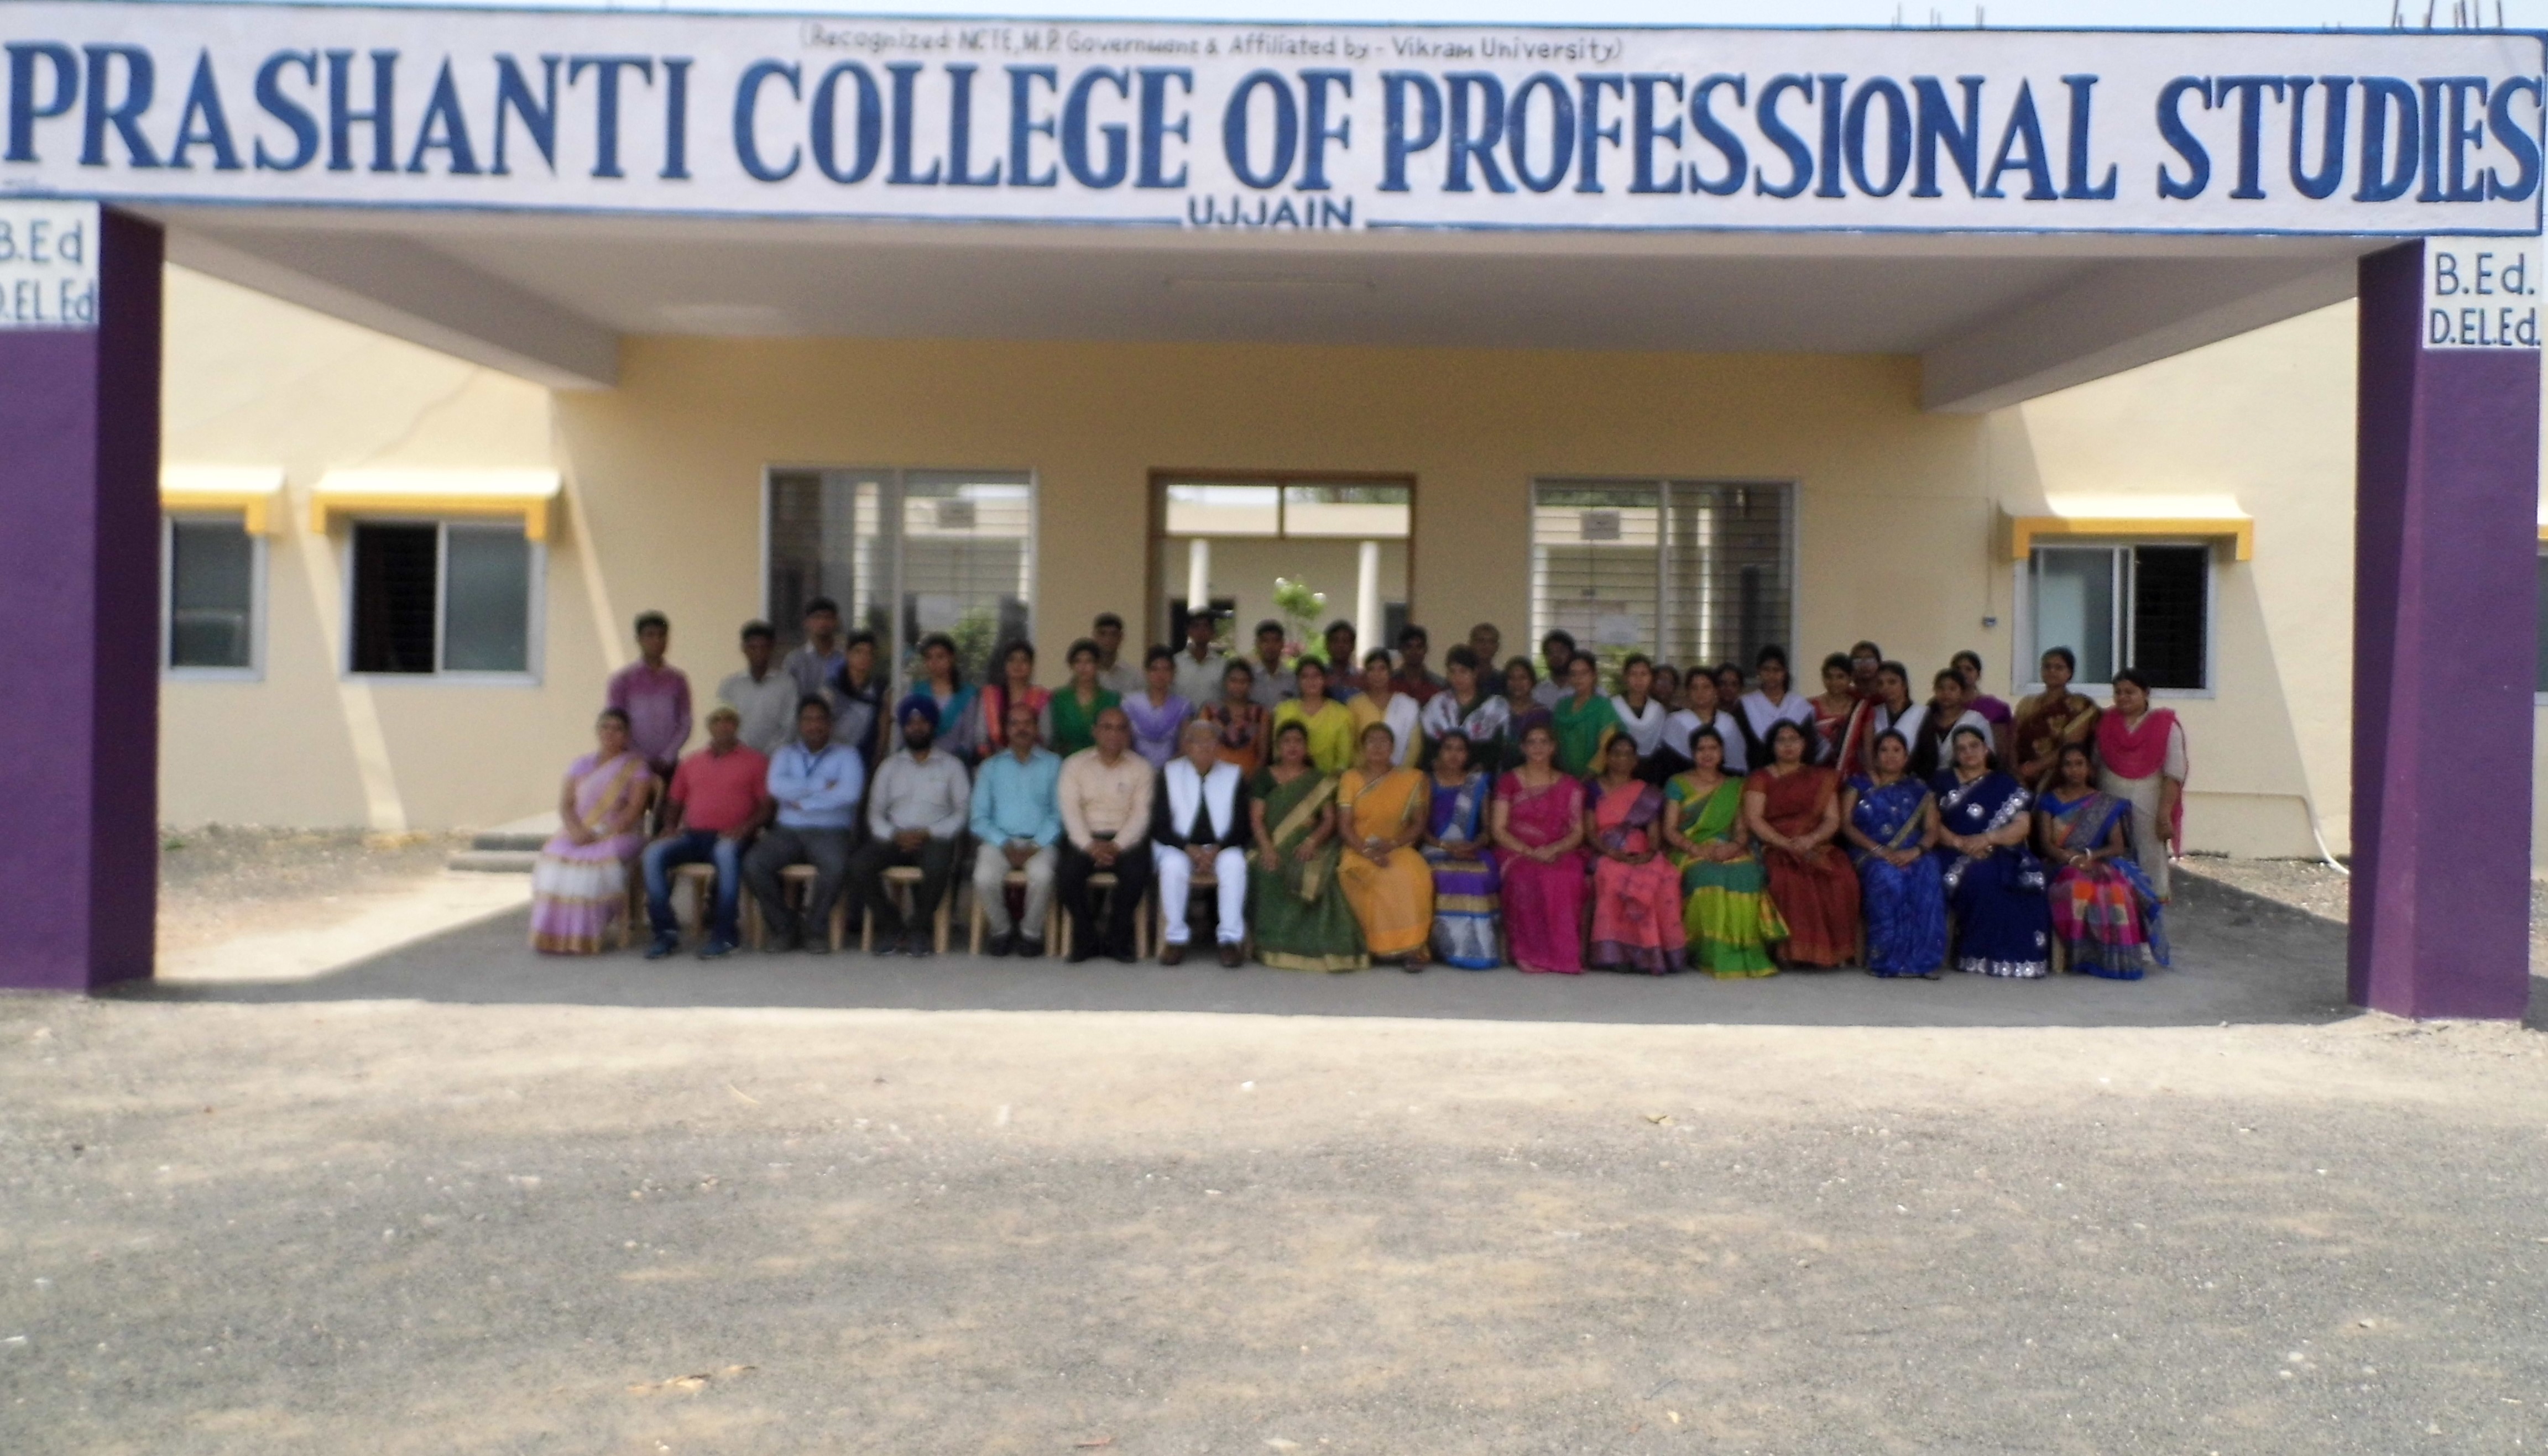 
Prashanti College of Professional Studies